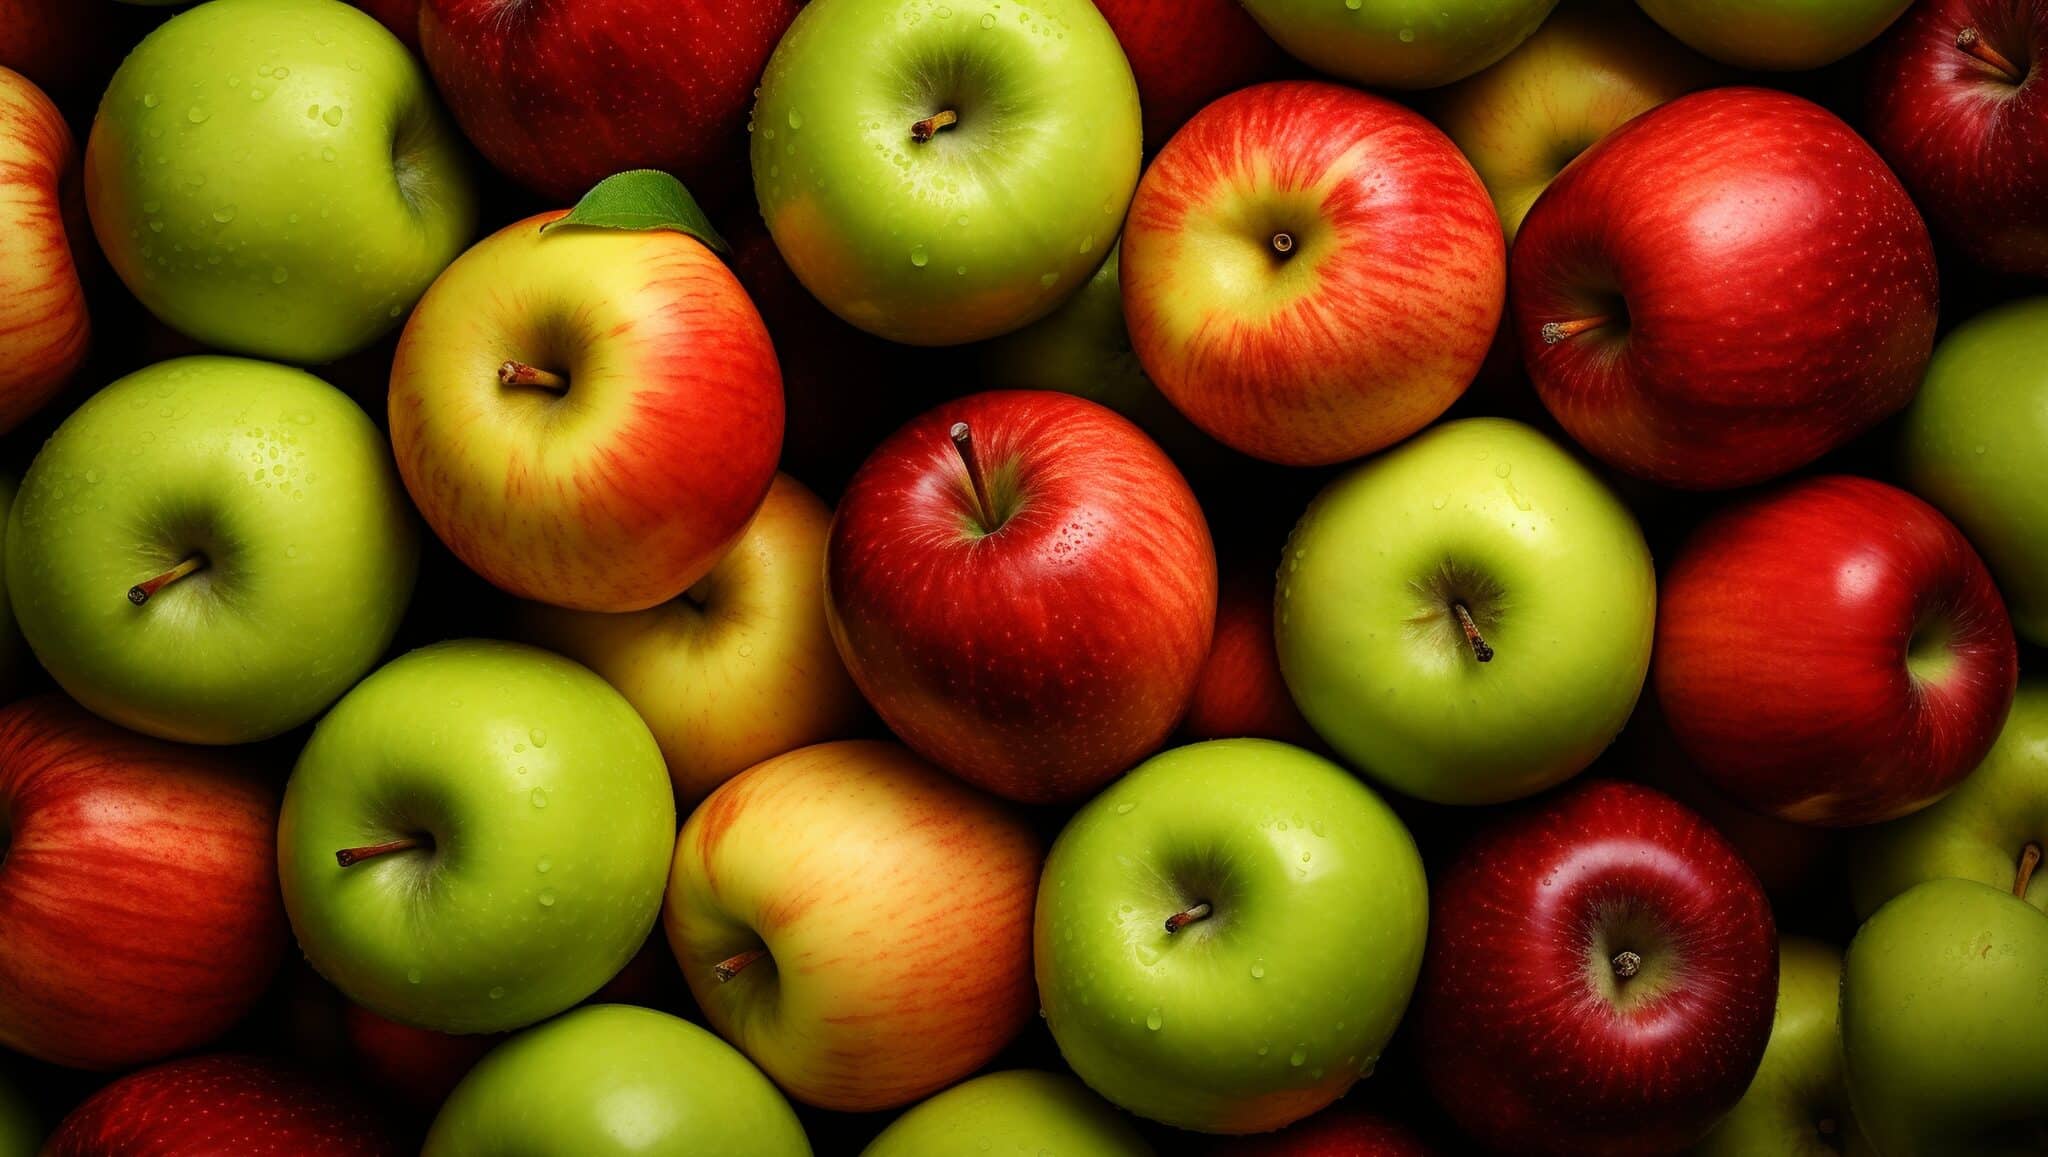 Pestycydy w żywności|jabłka pestycydy|